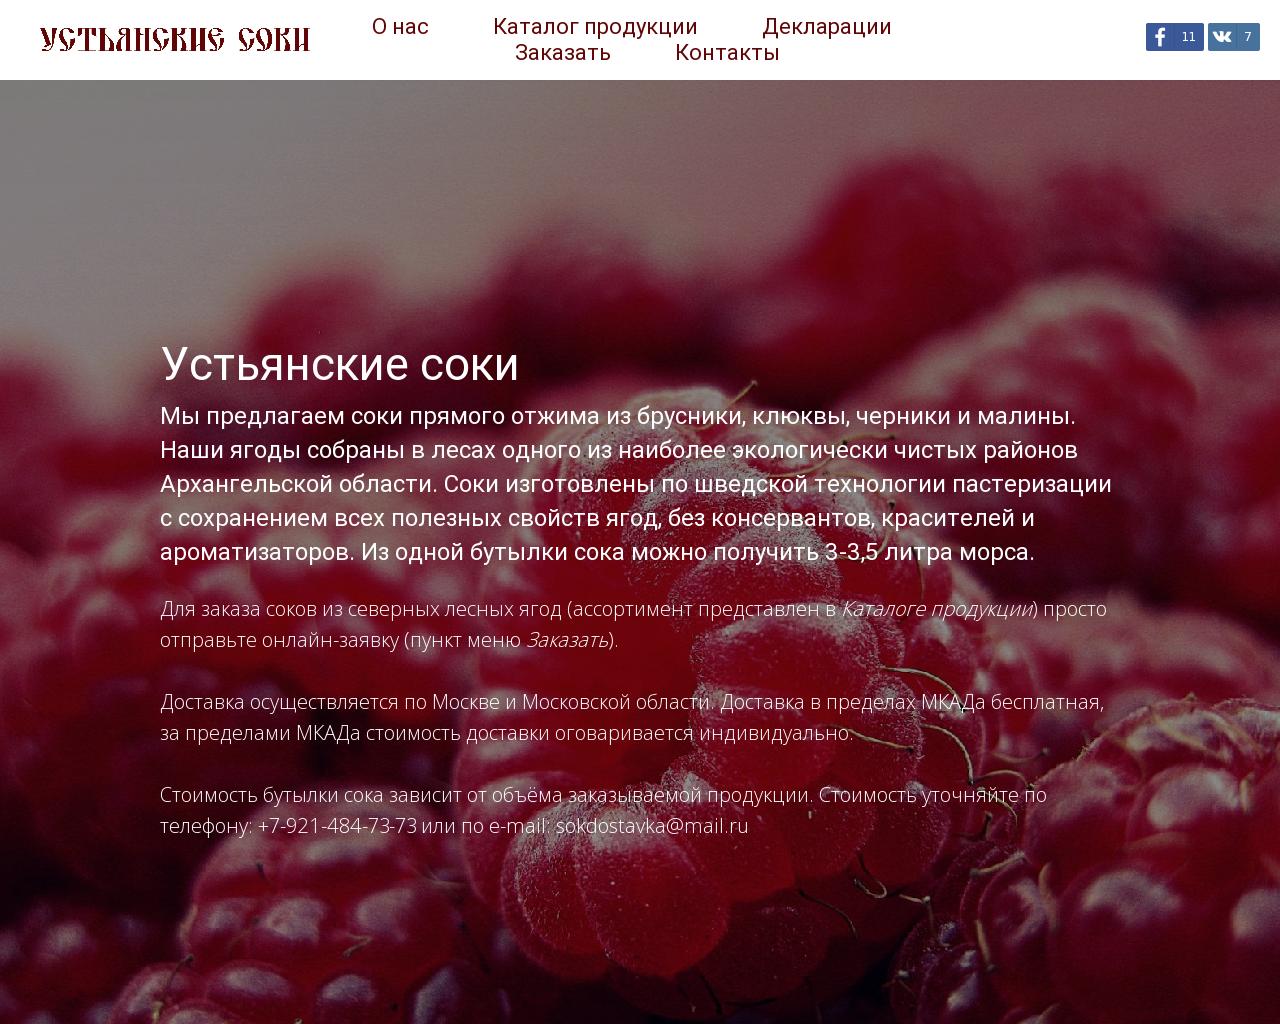 Изображение сайта ustianskiesoki.ru в разрешении 1280x1024